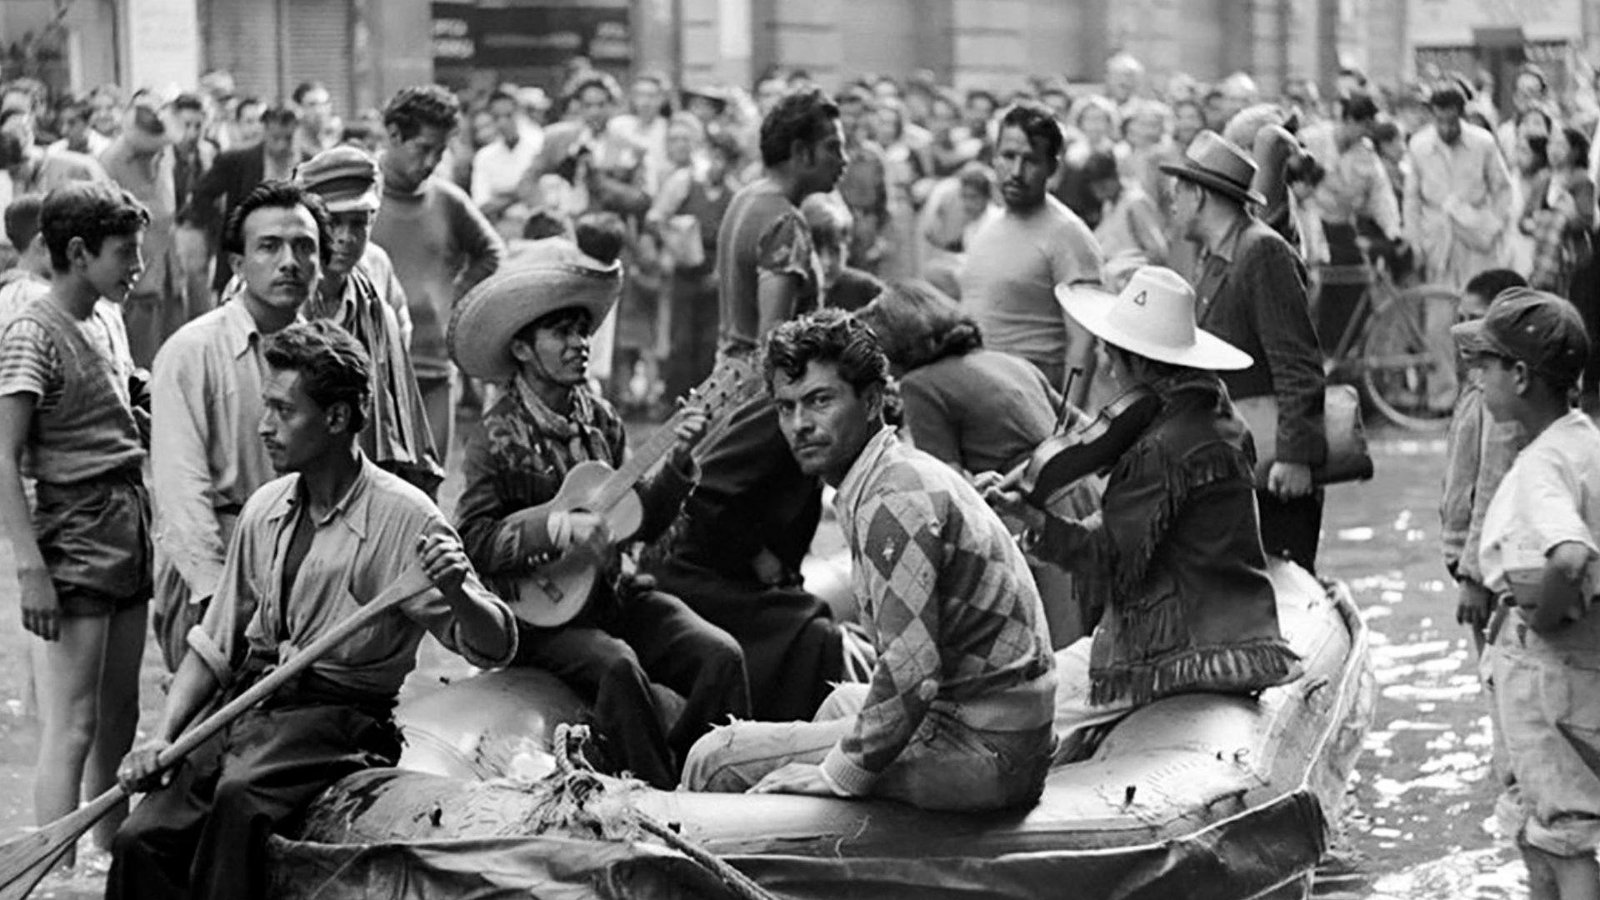 Vemos a un grupo de músicos tocando una canción en una balsa que servía para trasportar a la gente, aunque el nivel del agua ya no era tan algo. Inundación de Ciudad de México de 1951